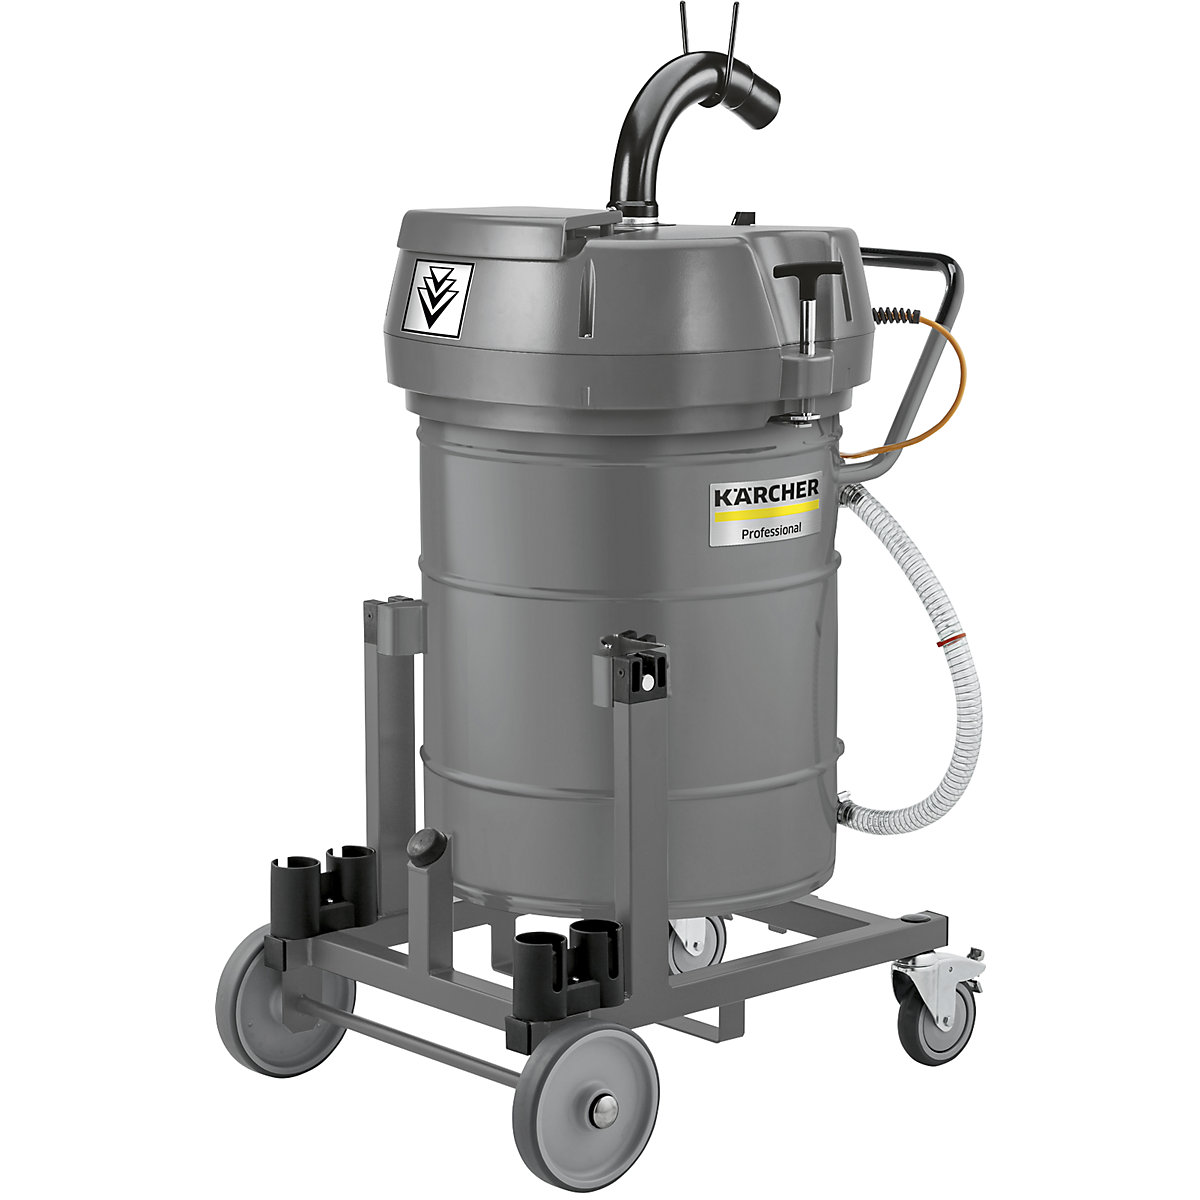 IVR-L 100/24-2 Tc special wet/dry vacuum cleaner – Kärcher